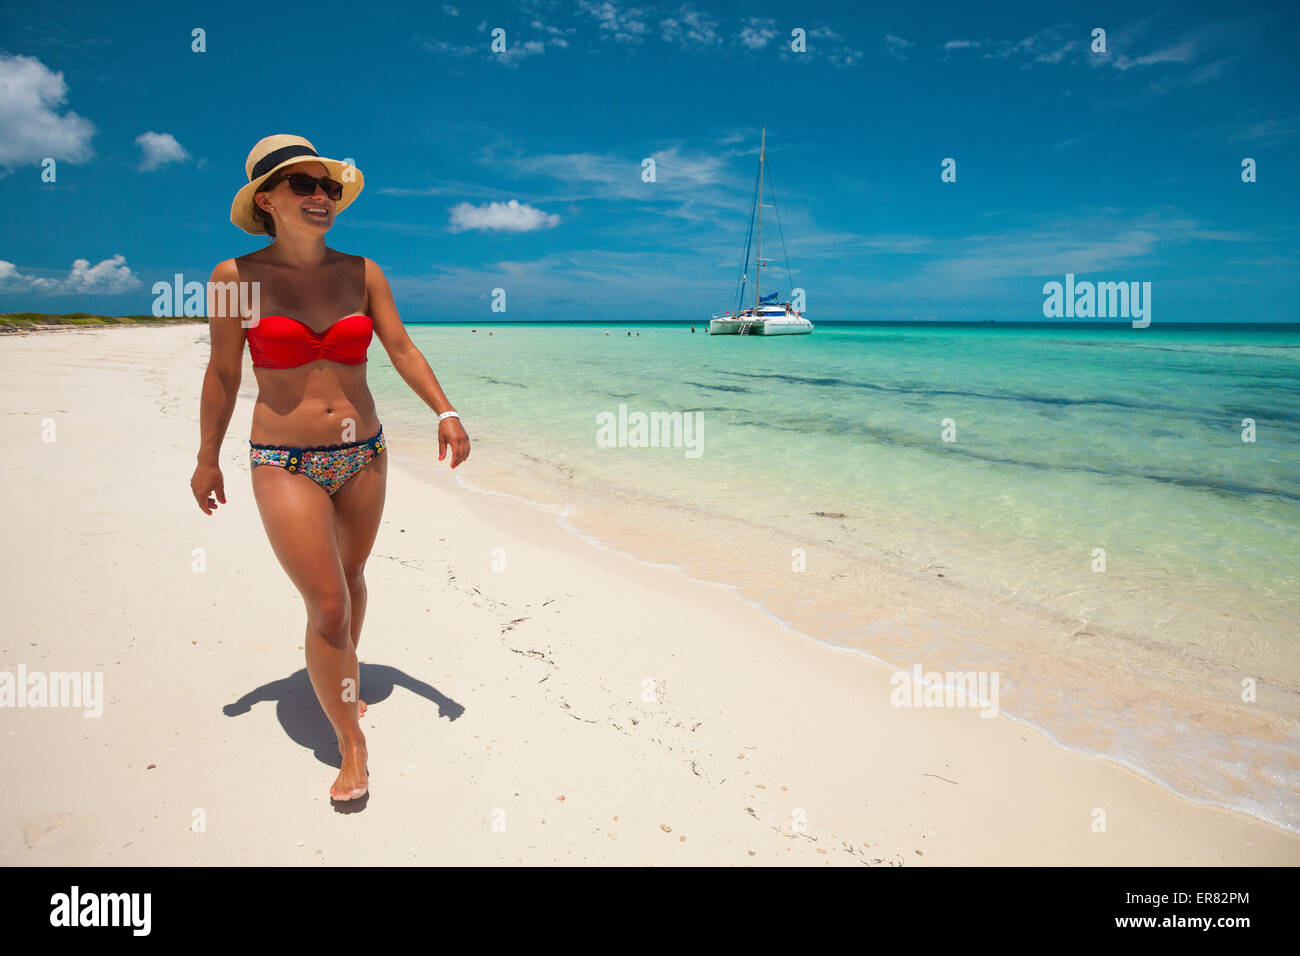 A young woman wearing a bikini and sun hat walks a sandy beach. Stock Photo